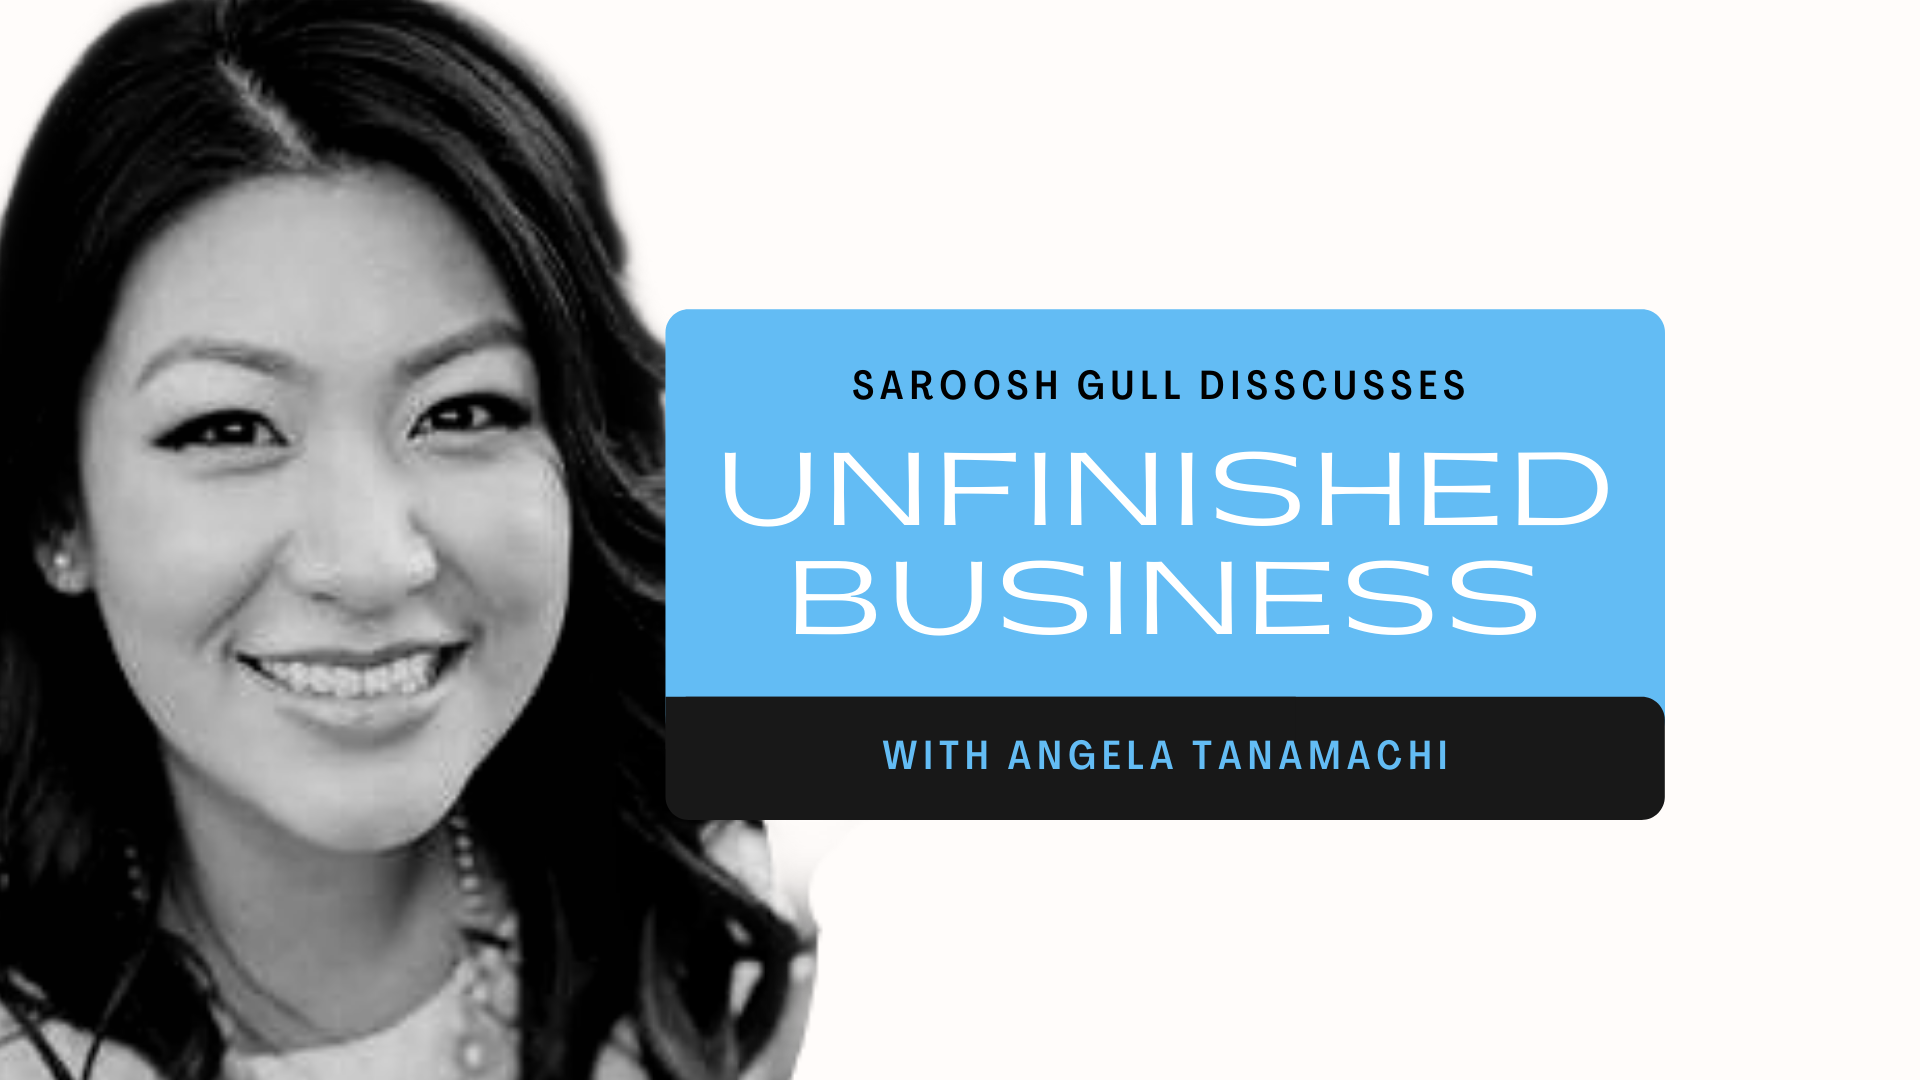 UNFINISHED BUSINESS - with Angela Tanamachi